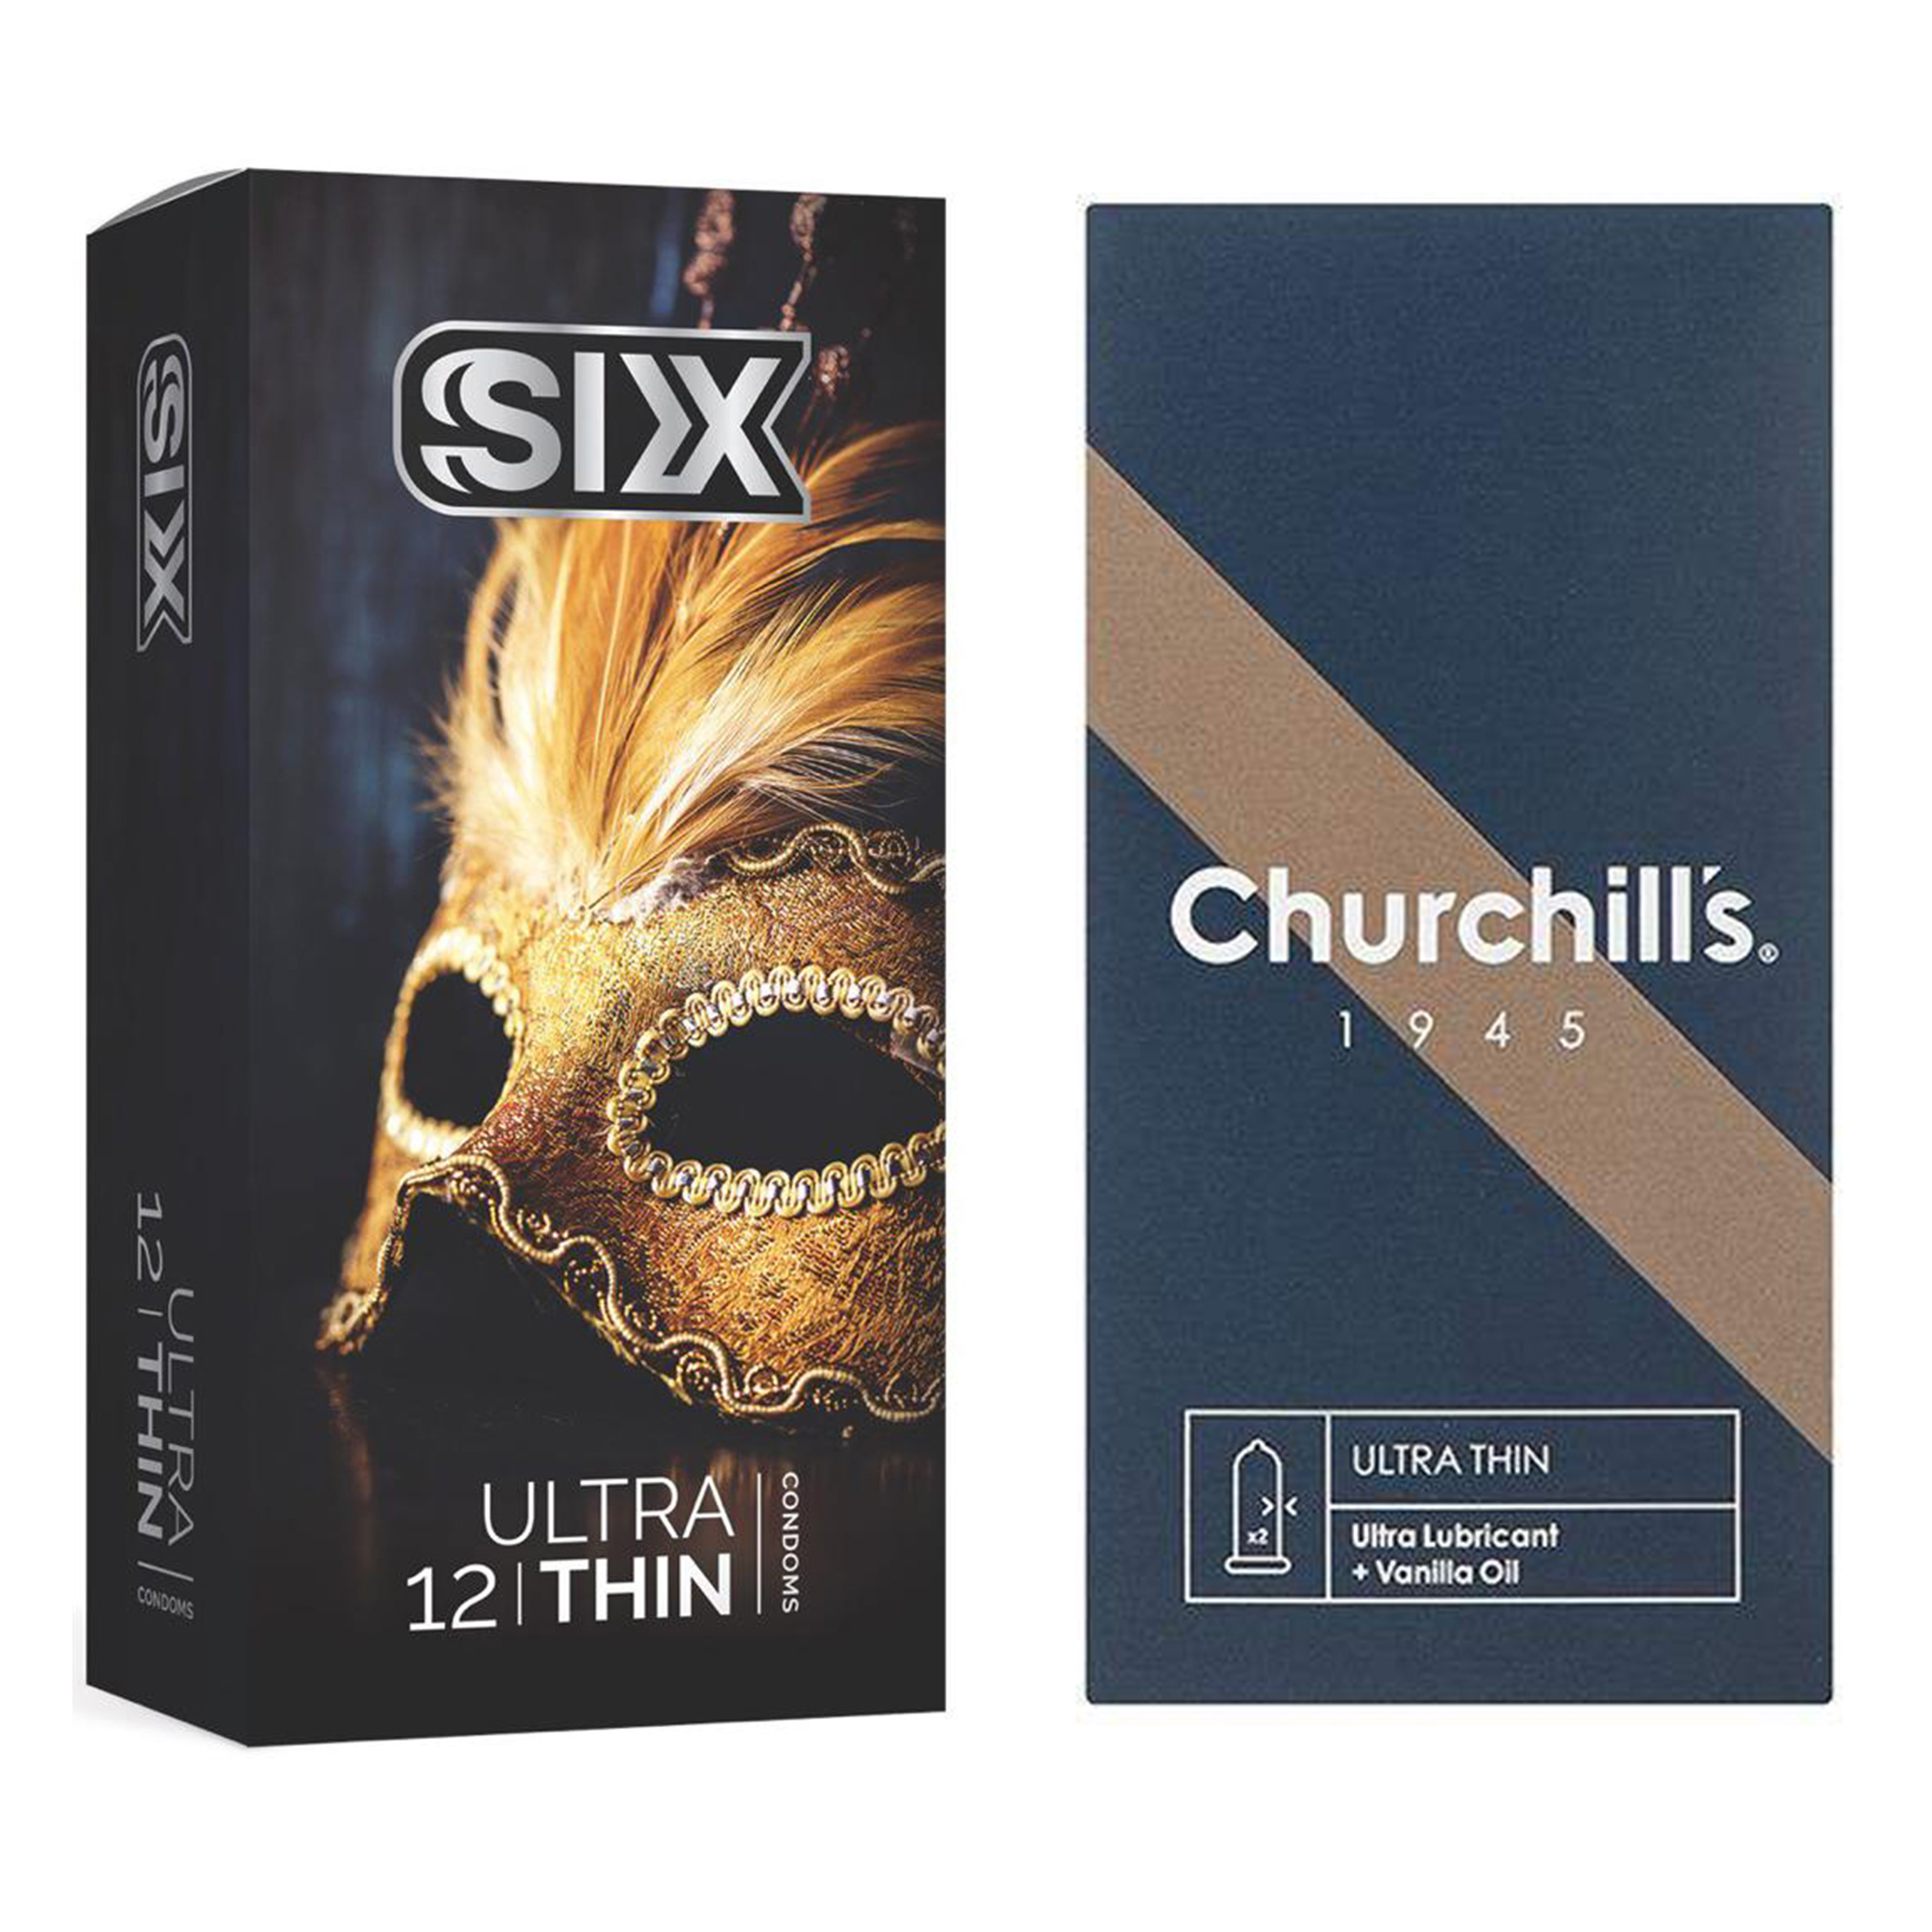 کاندوم چرچیلز مدل Ultra Thin بسته 12 عددی به همراه کاندوم سیکس مدل حساس و فوق العاده نازک بسته 12 عددی